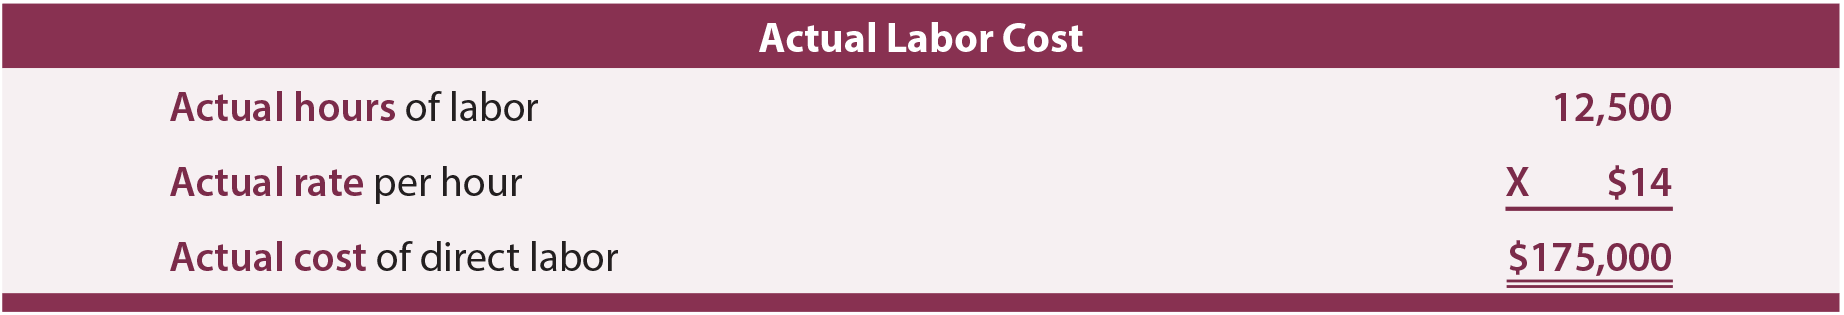 Actual Labor Cost